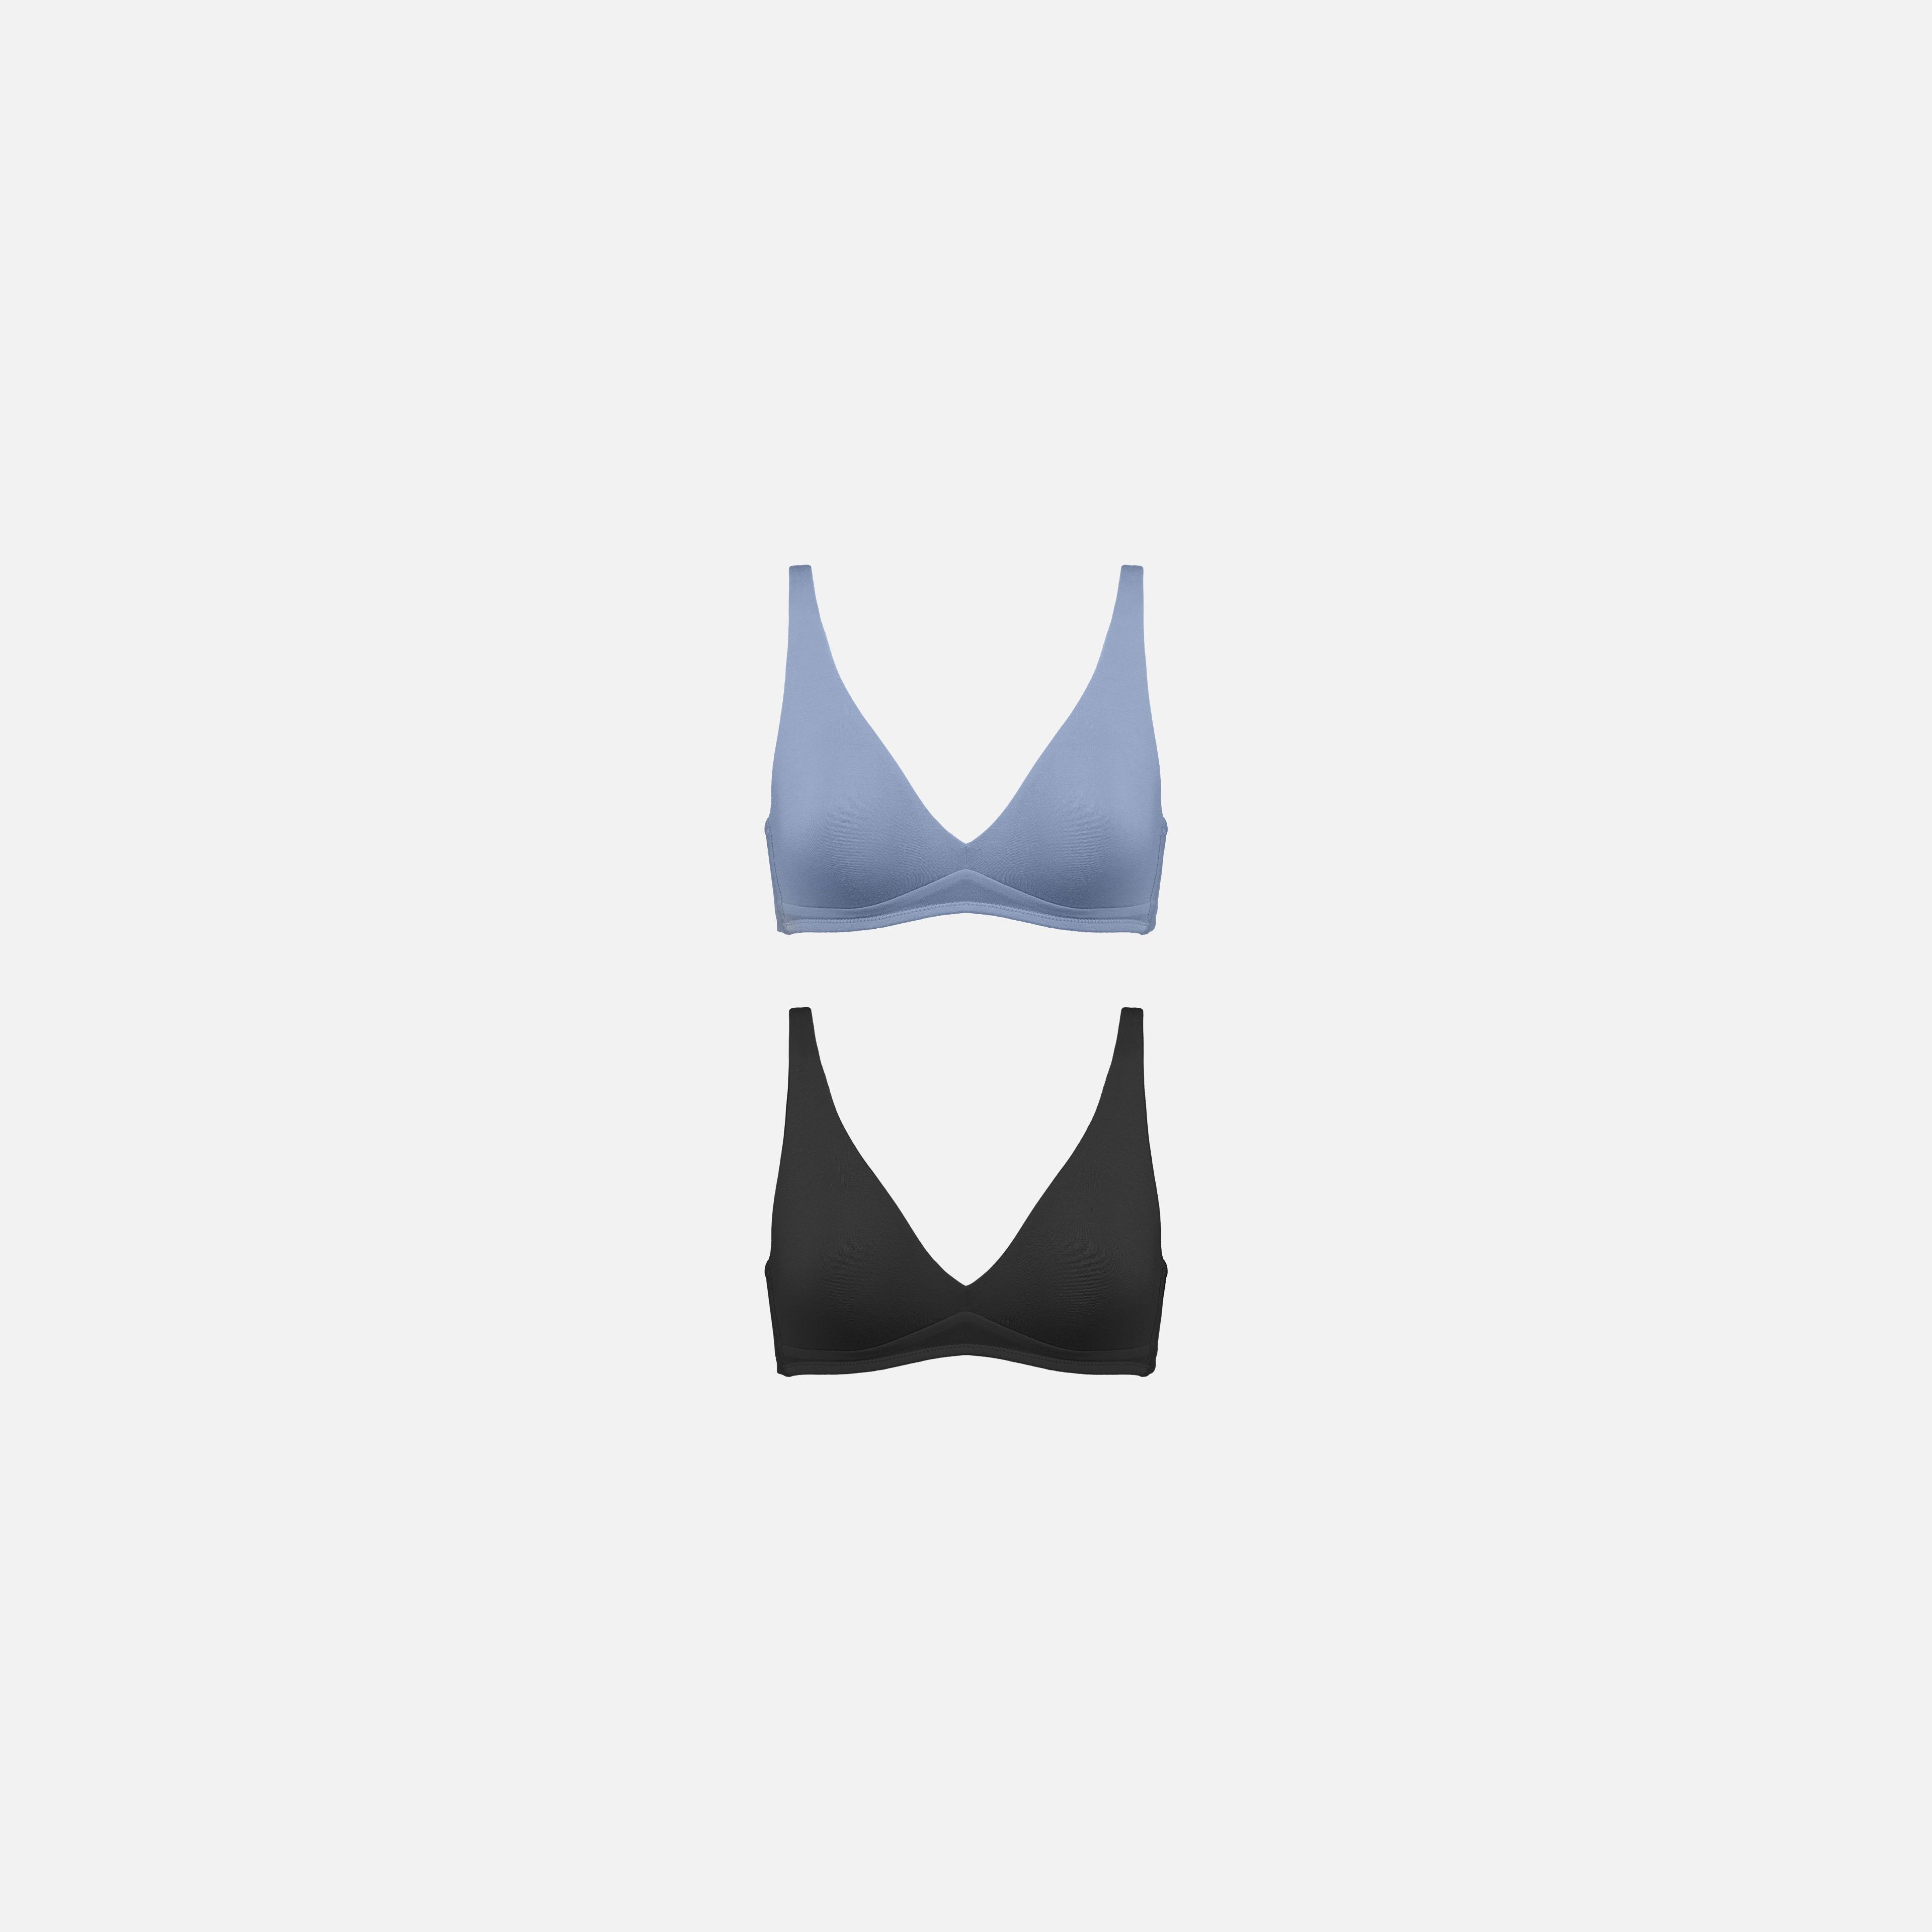 Sieve Cutout Bra in Buff  Cutout Bralette - Women's Underwear